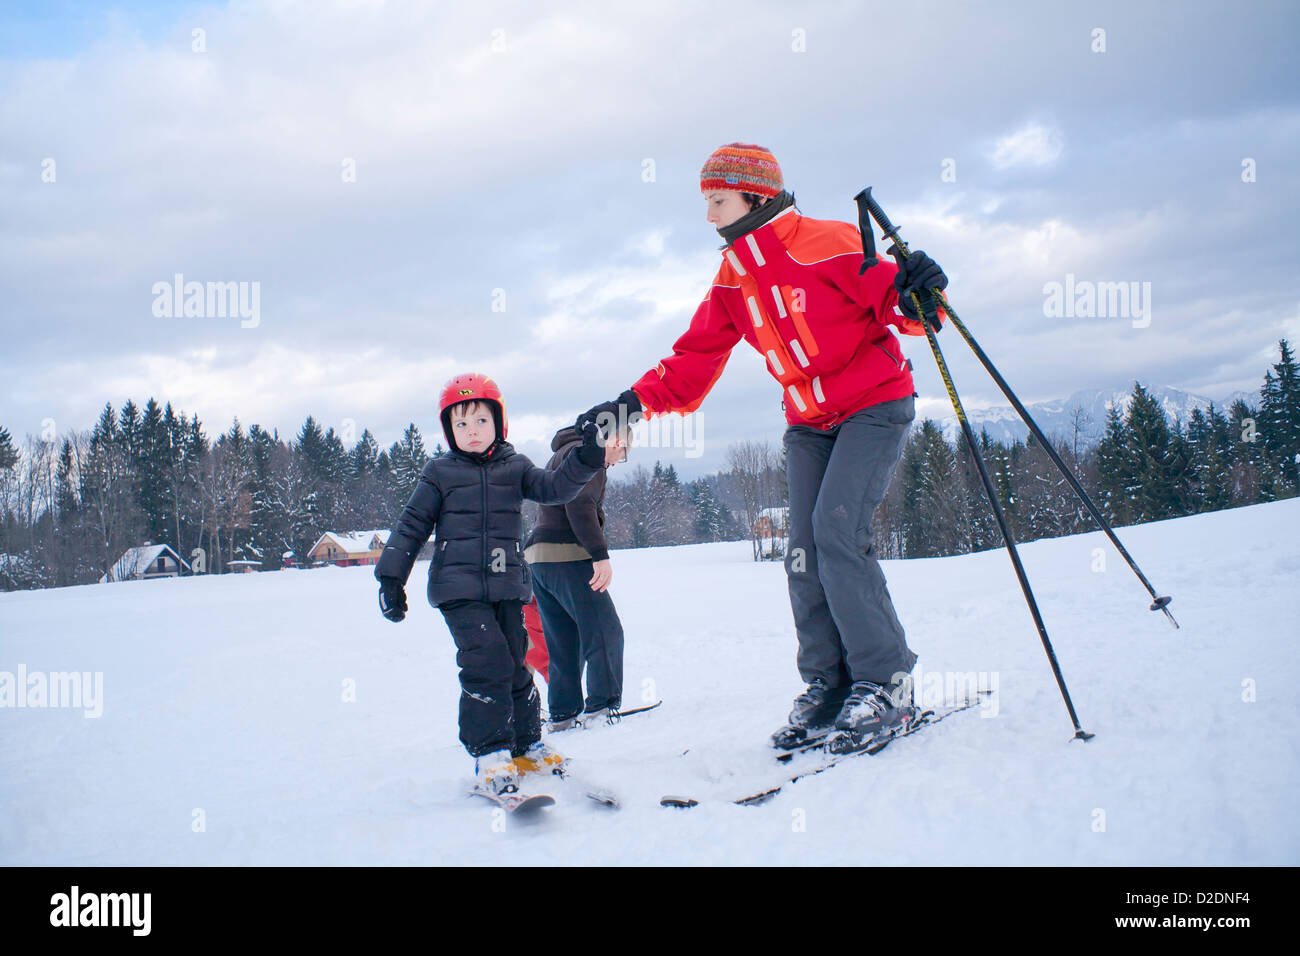 Ski lesson - family on snow. Stock Photo